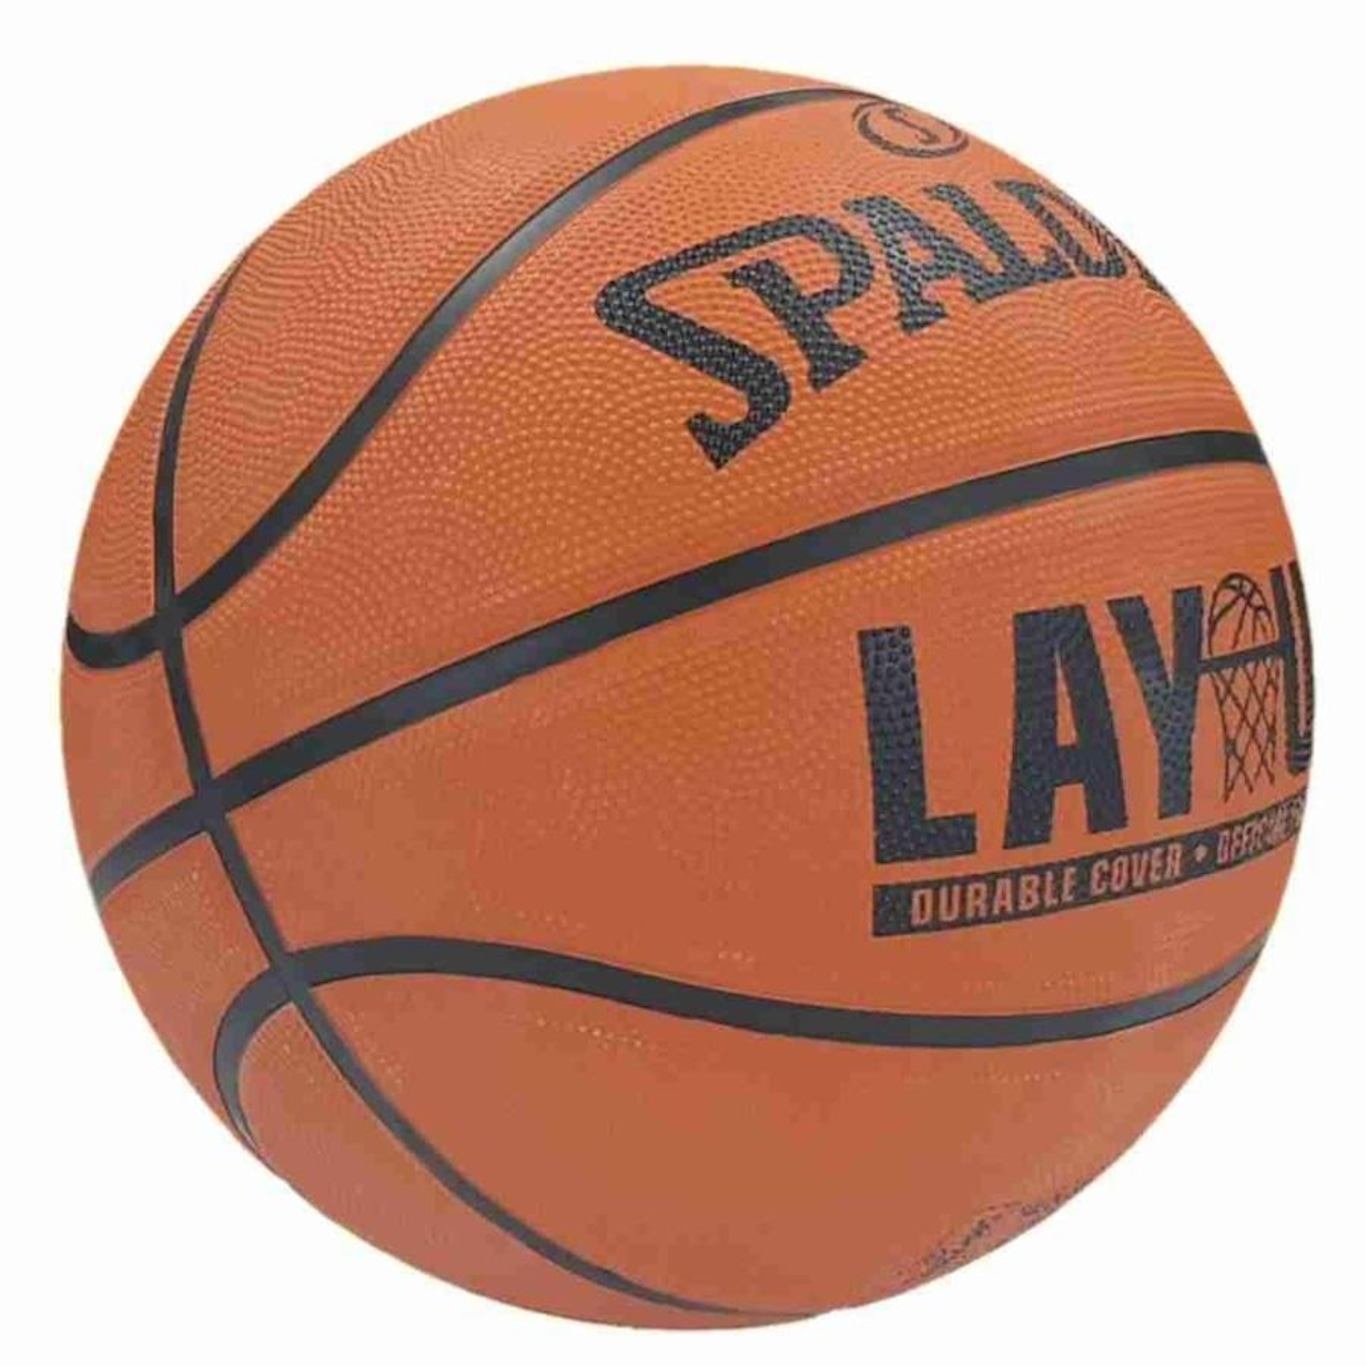 Bola de Basquete Spalding Lay-Up em Promoção